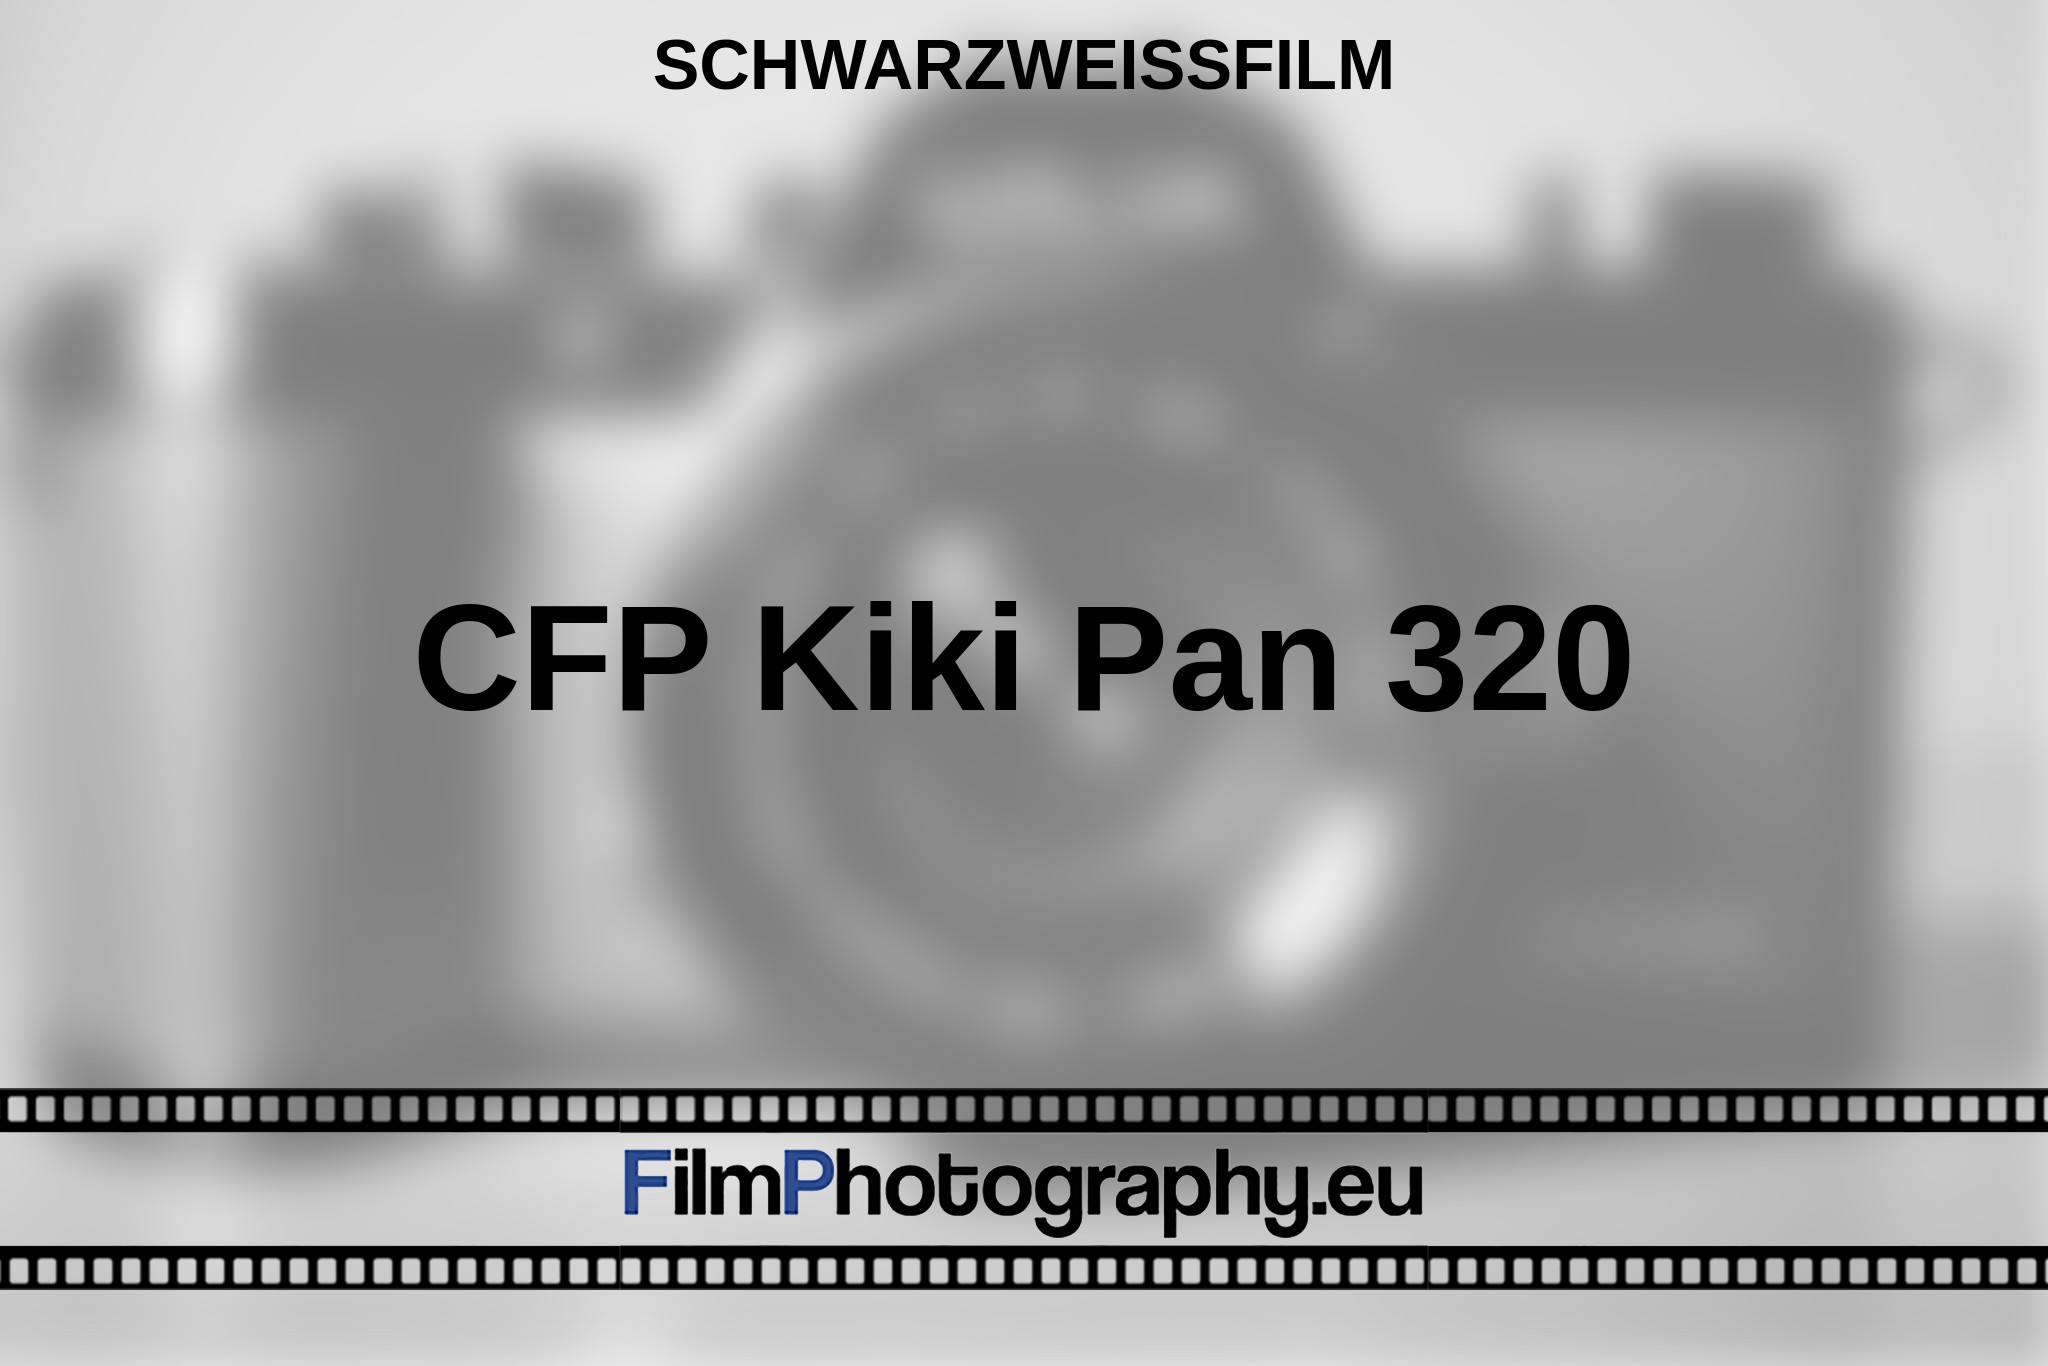 cfp-kiki-pan-320-schwarzweißfilm-bnv.jpg